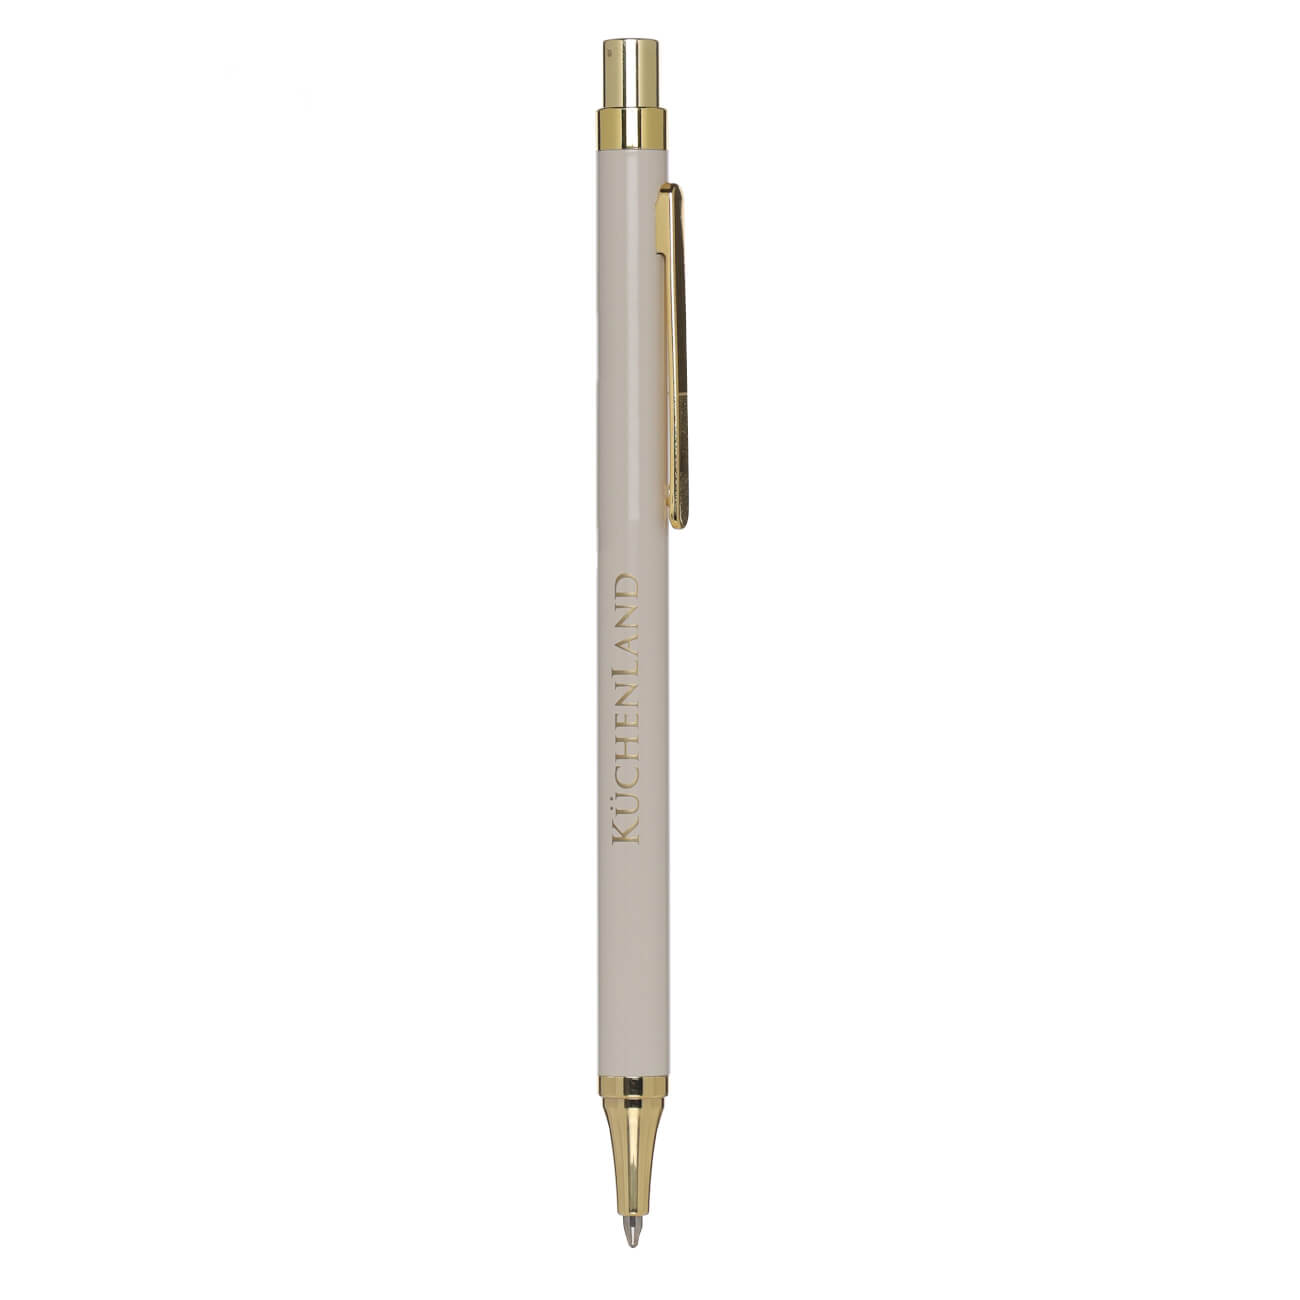 Ручка шариковая, 14 см, металл/пластик, бежевая, Eclipse ручка подарочная шариковая в кожзам футляре